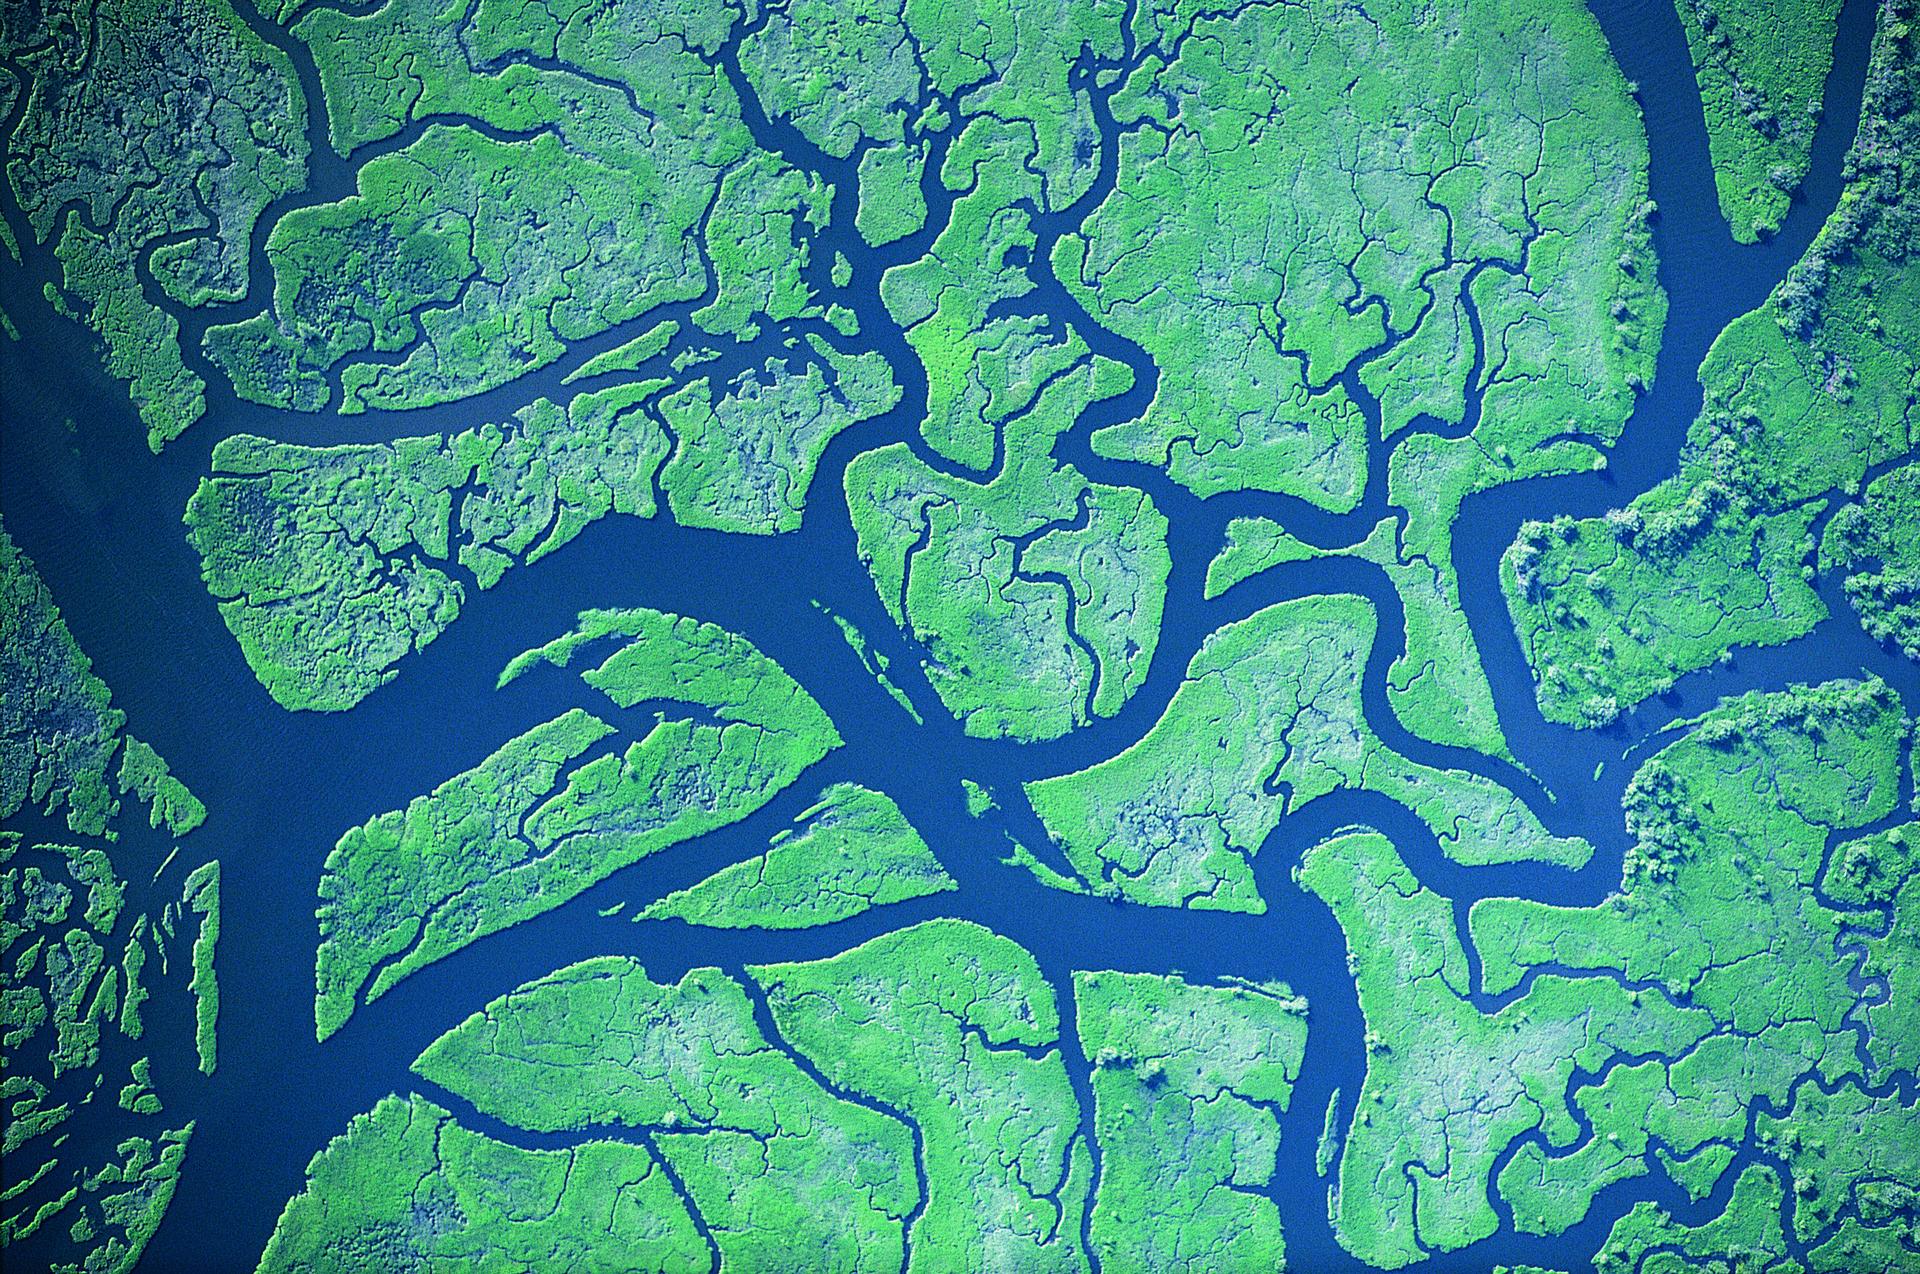 Luftaufnahme eines Flusses, die die faszinierende Schönheit der Welt von oben zeigt.